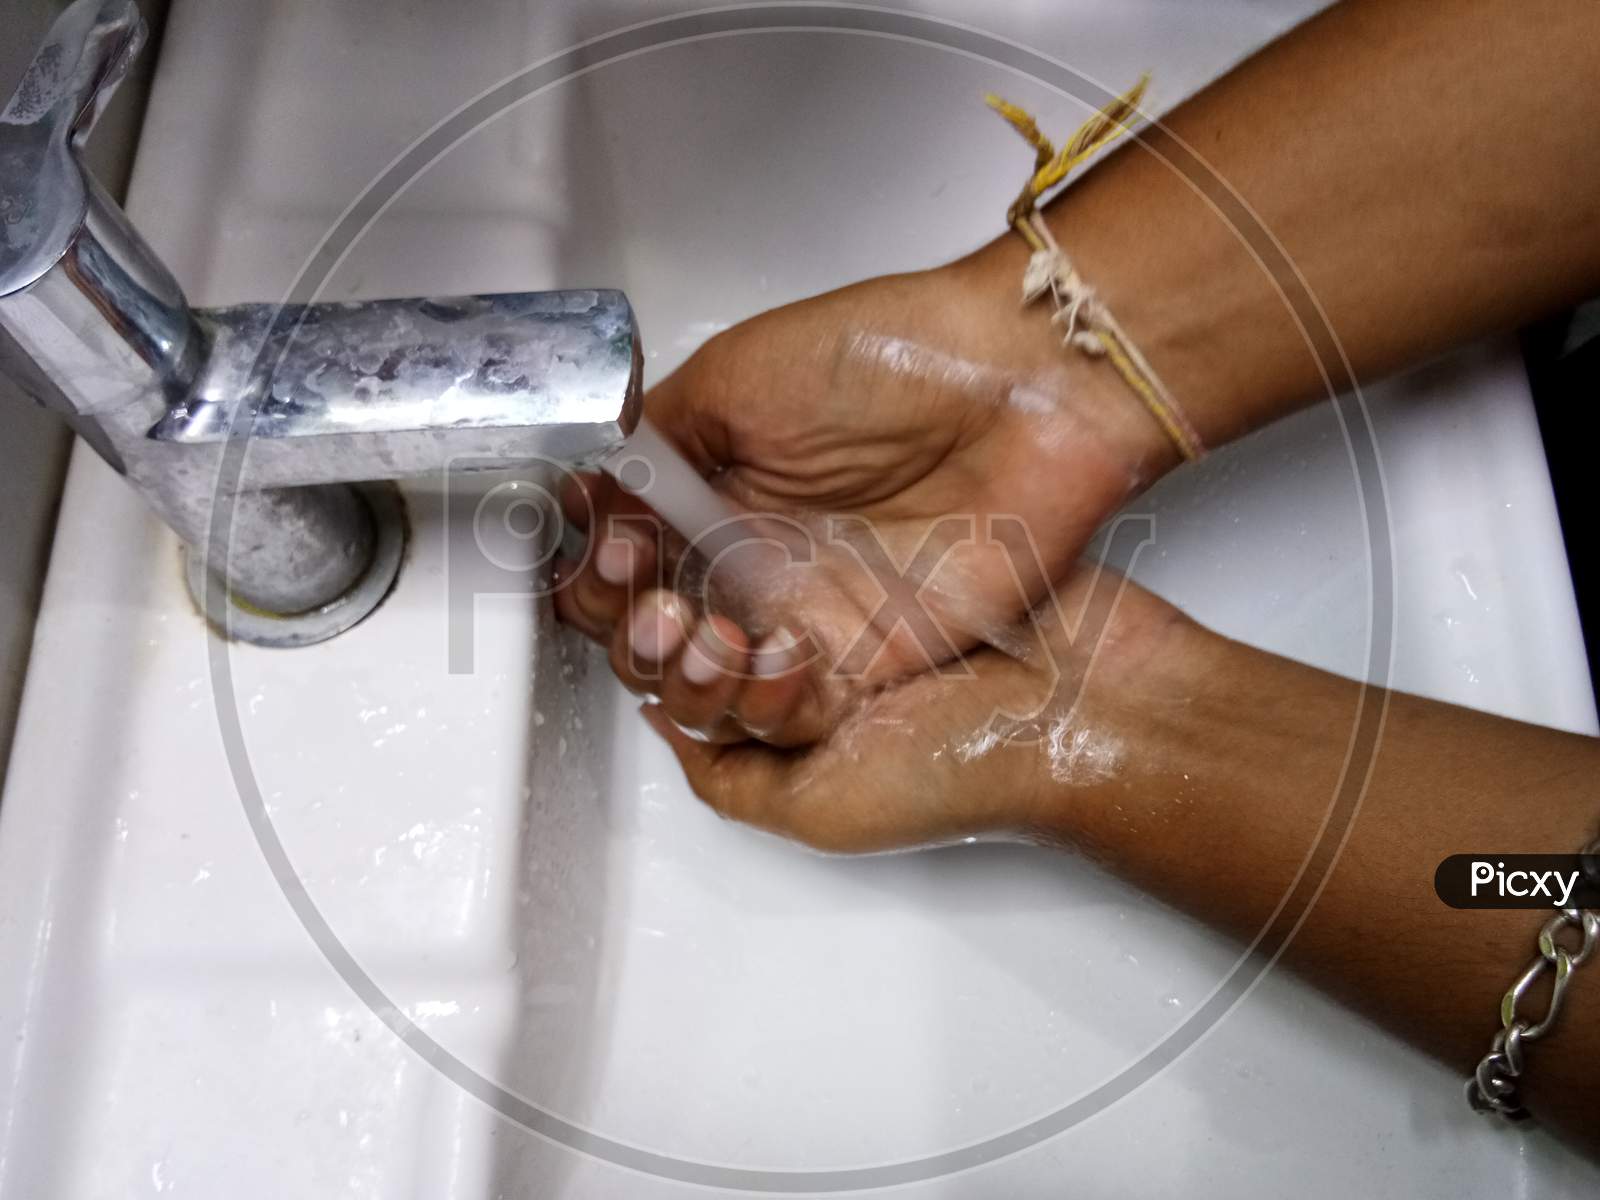 Water hand wash